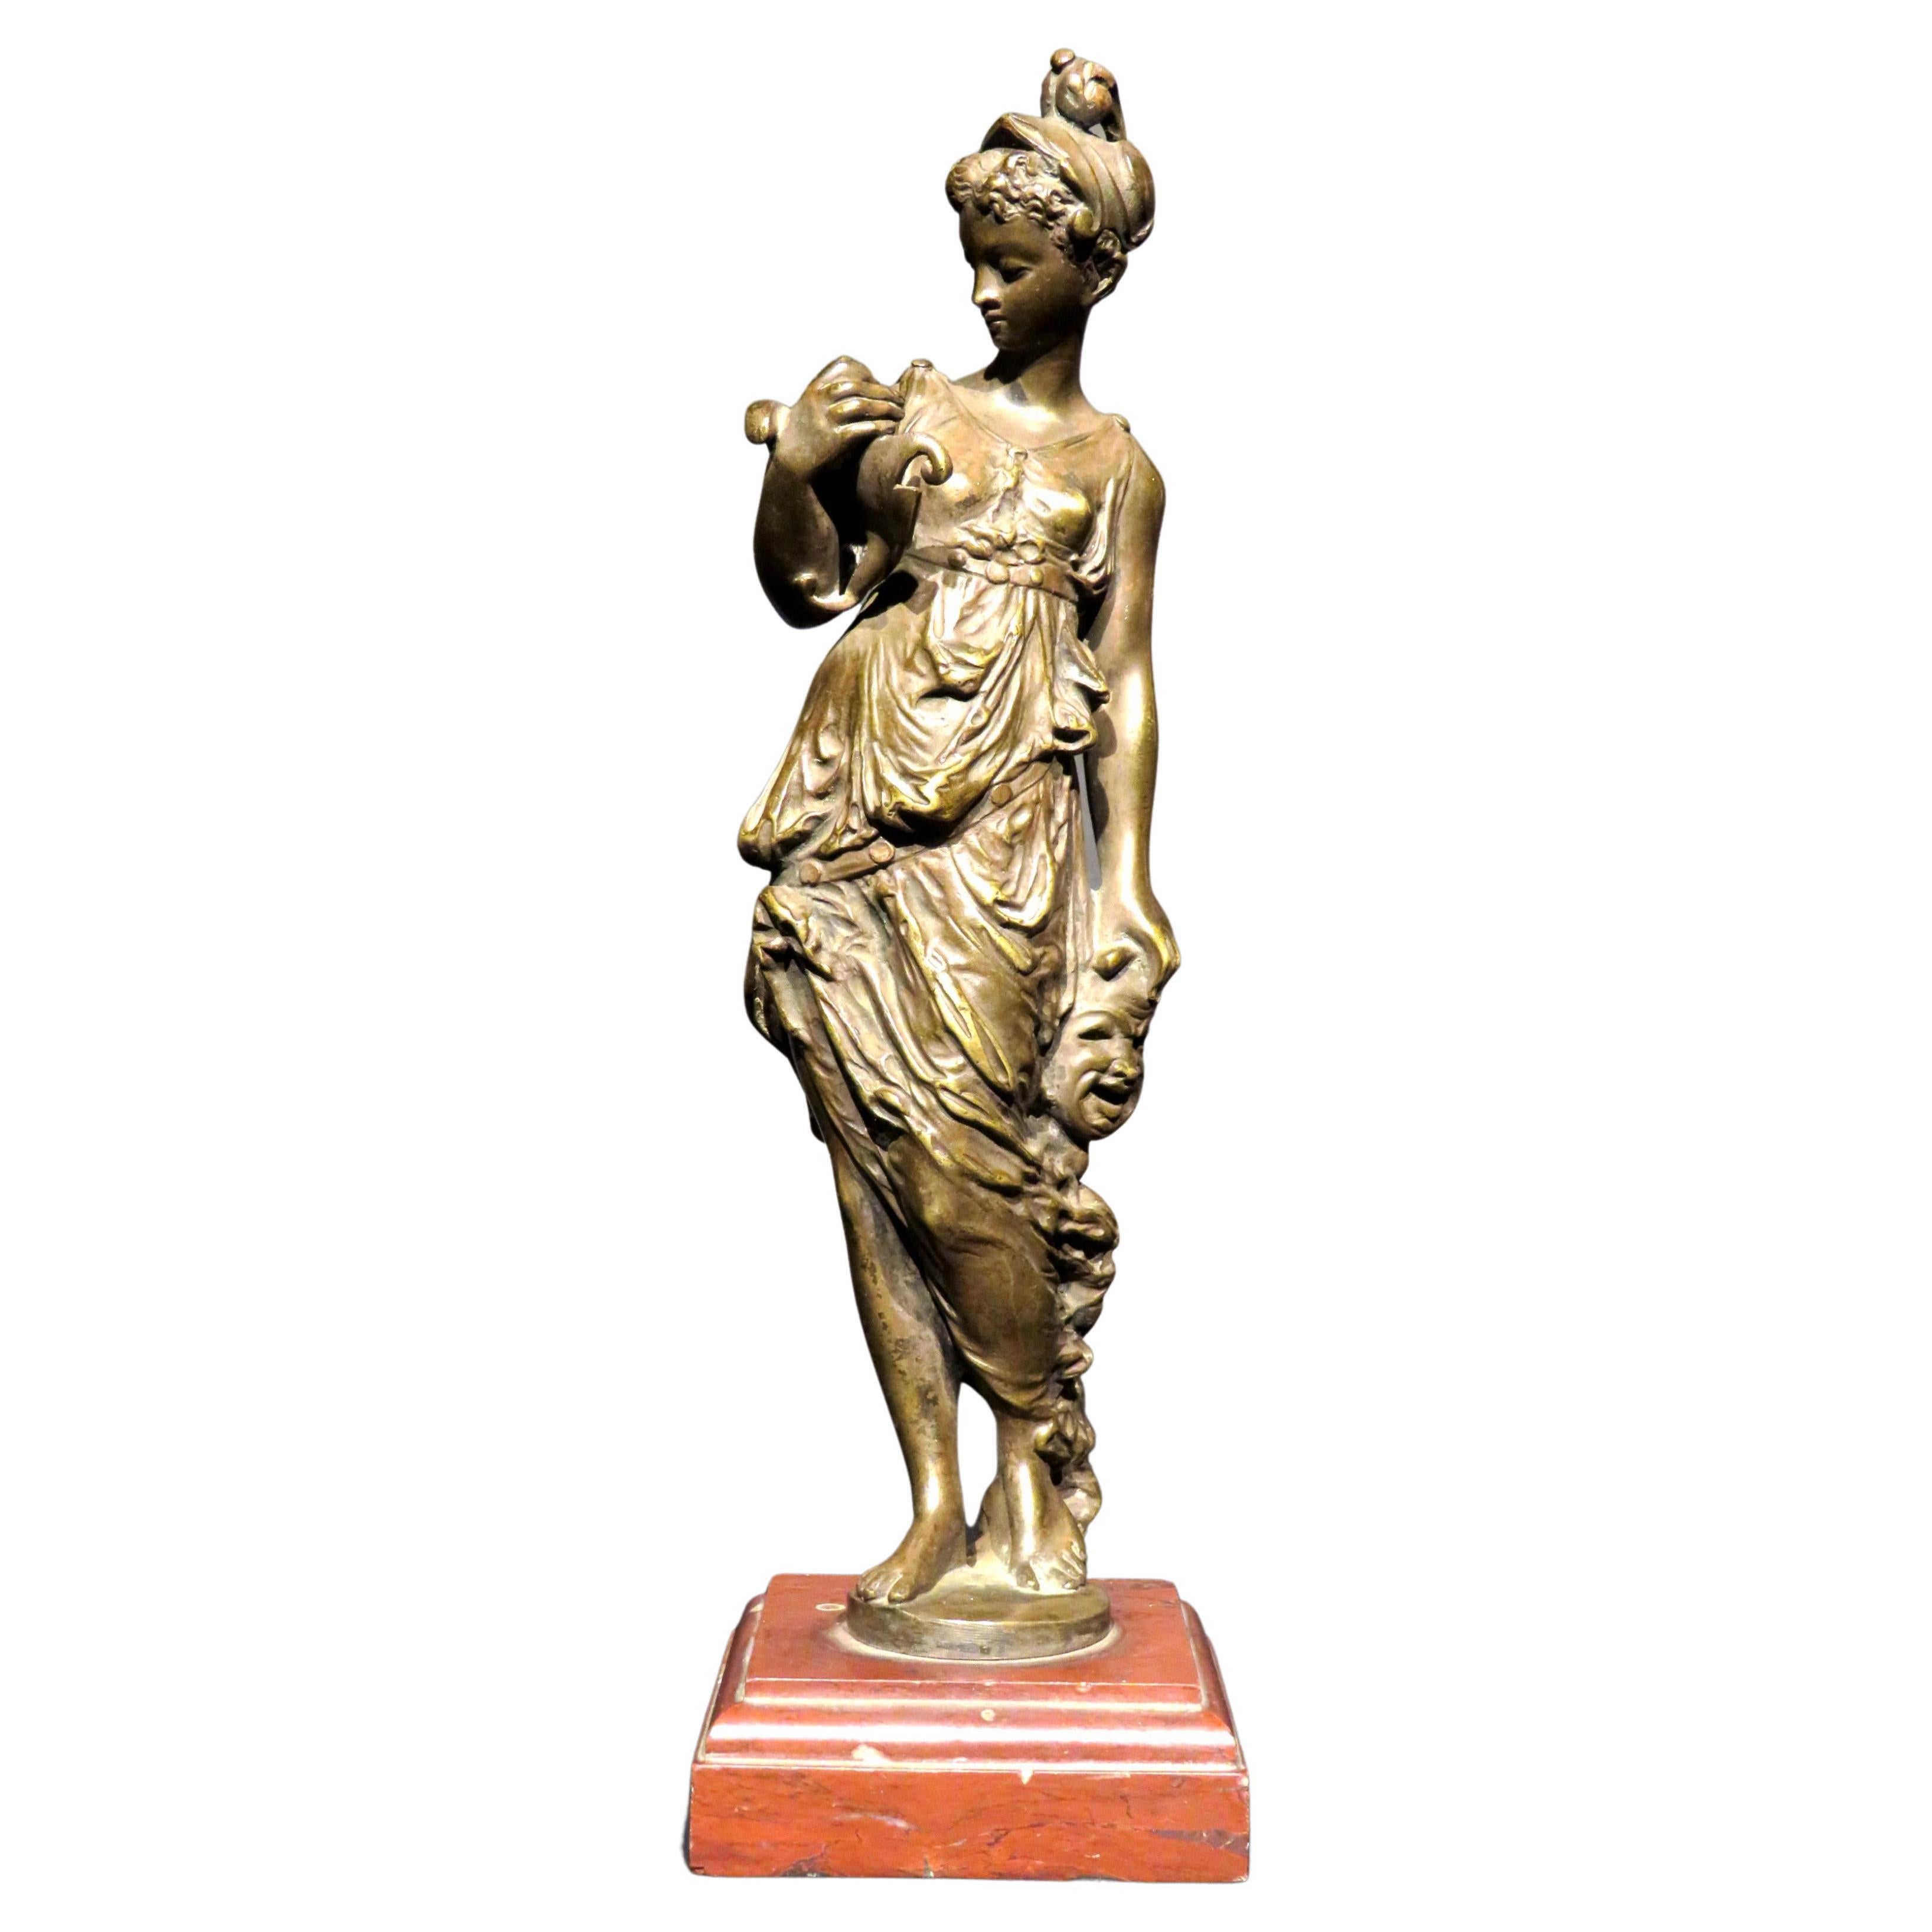 Bronze allégorique de style Grand Tour représentant Thalia, déesse grecque de la comédie et de la poésie